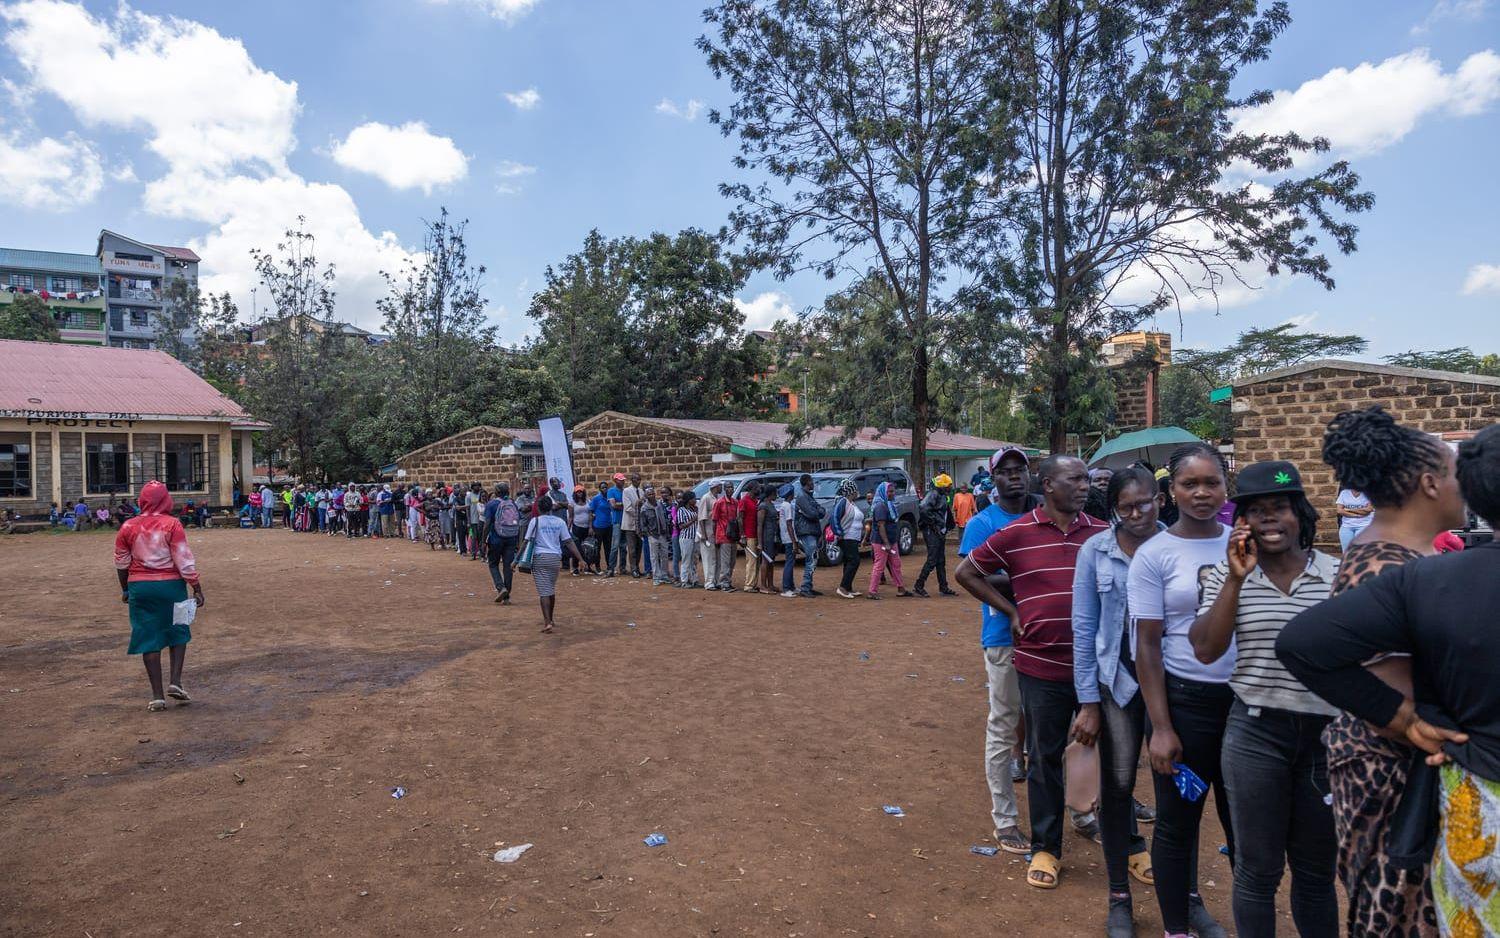 Den privata sektorn i Kenya startade en ”medical camp” där folk från Mathare-området fick hälsoundersökningar och mediciner till ett reducerat pris. Det råder en enorm brist på hälsokliniker här och hundratals människor köade för att få hjälp. 